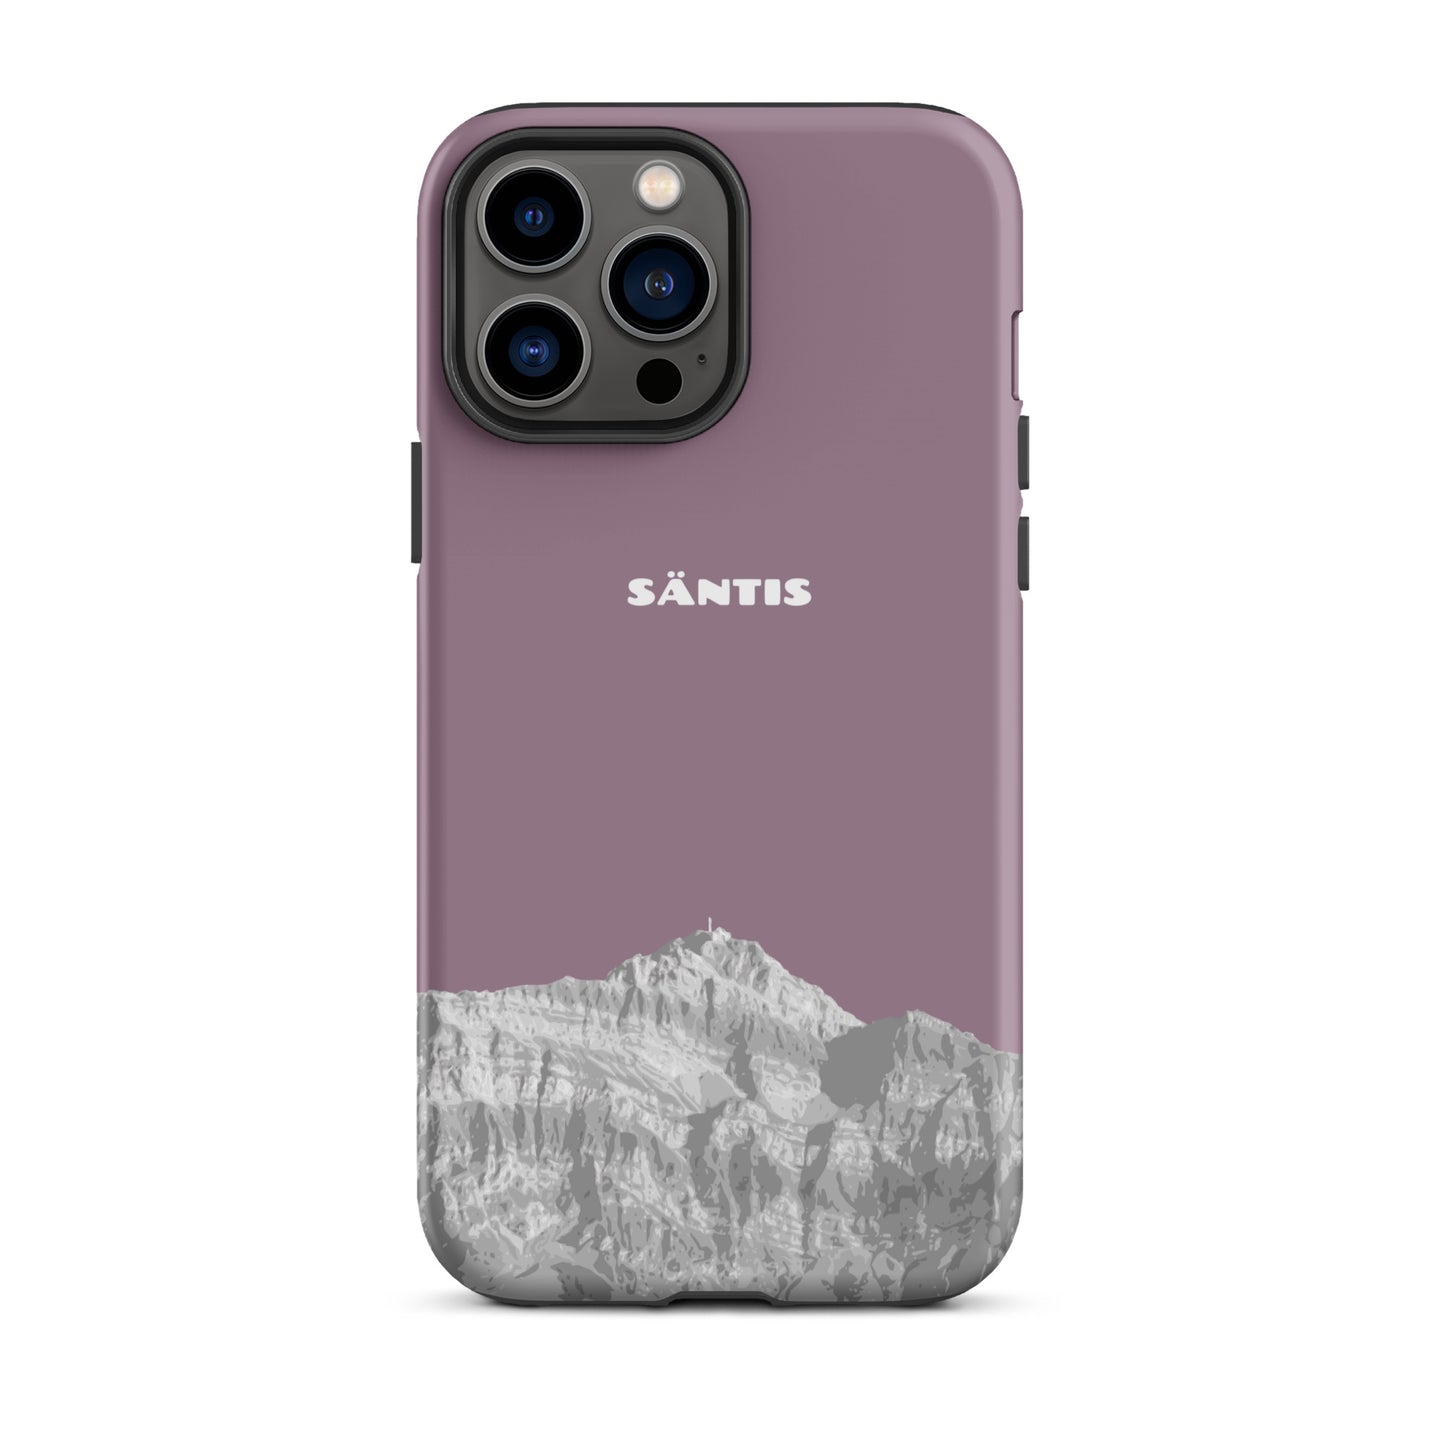 Hülle für das iPhone 13 Pro Max von Apple in der Farbe Pastellviolett, dass den Säntis im Alpstein zeigt.